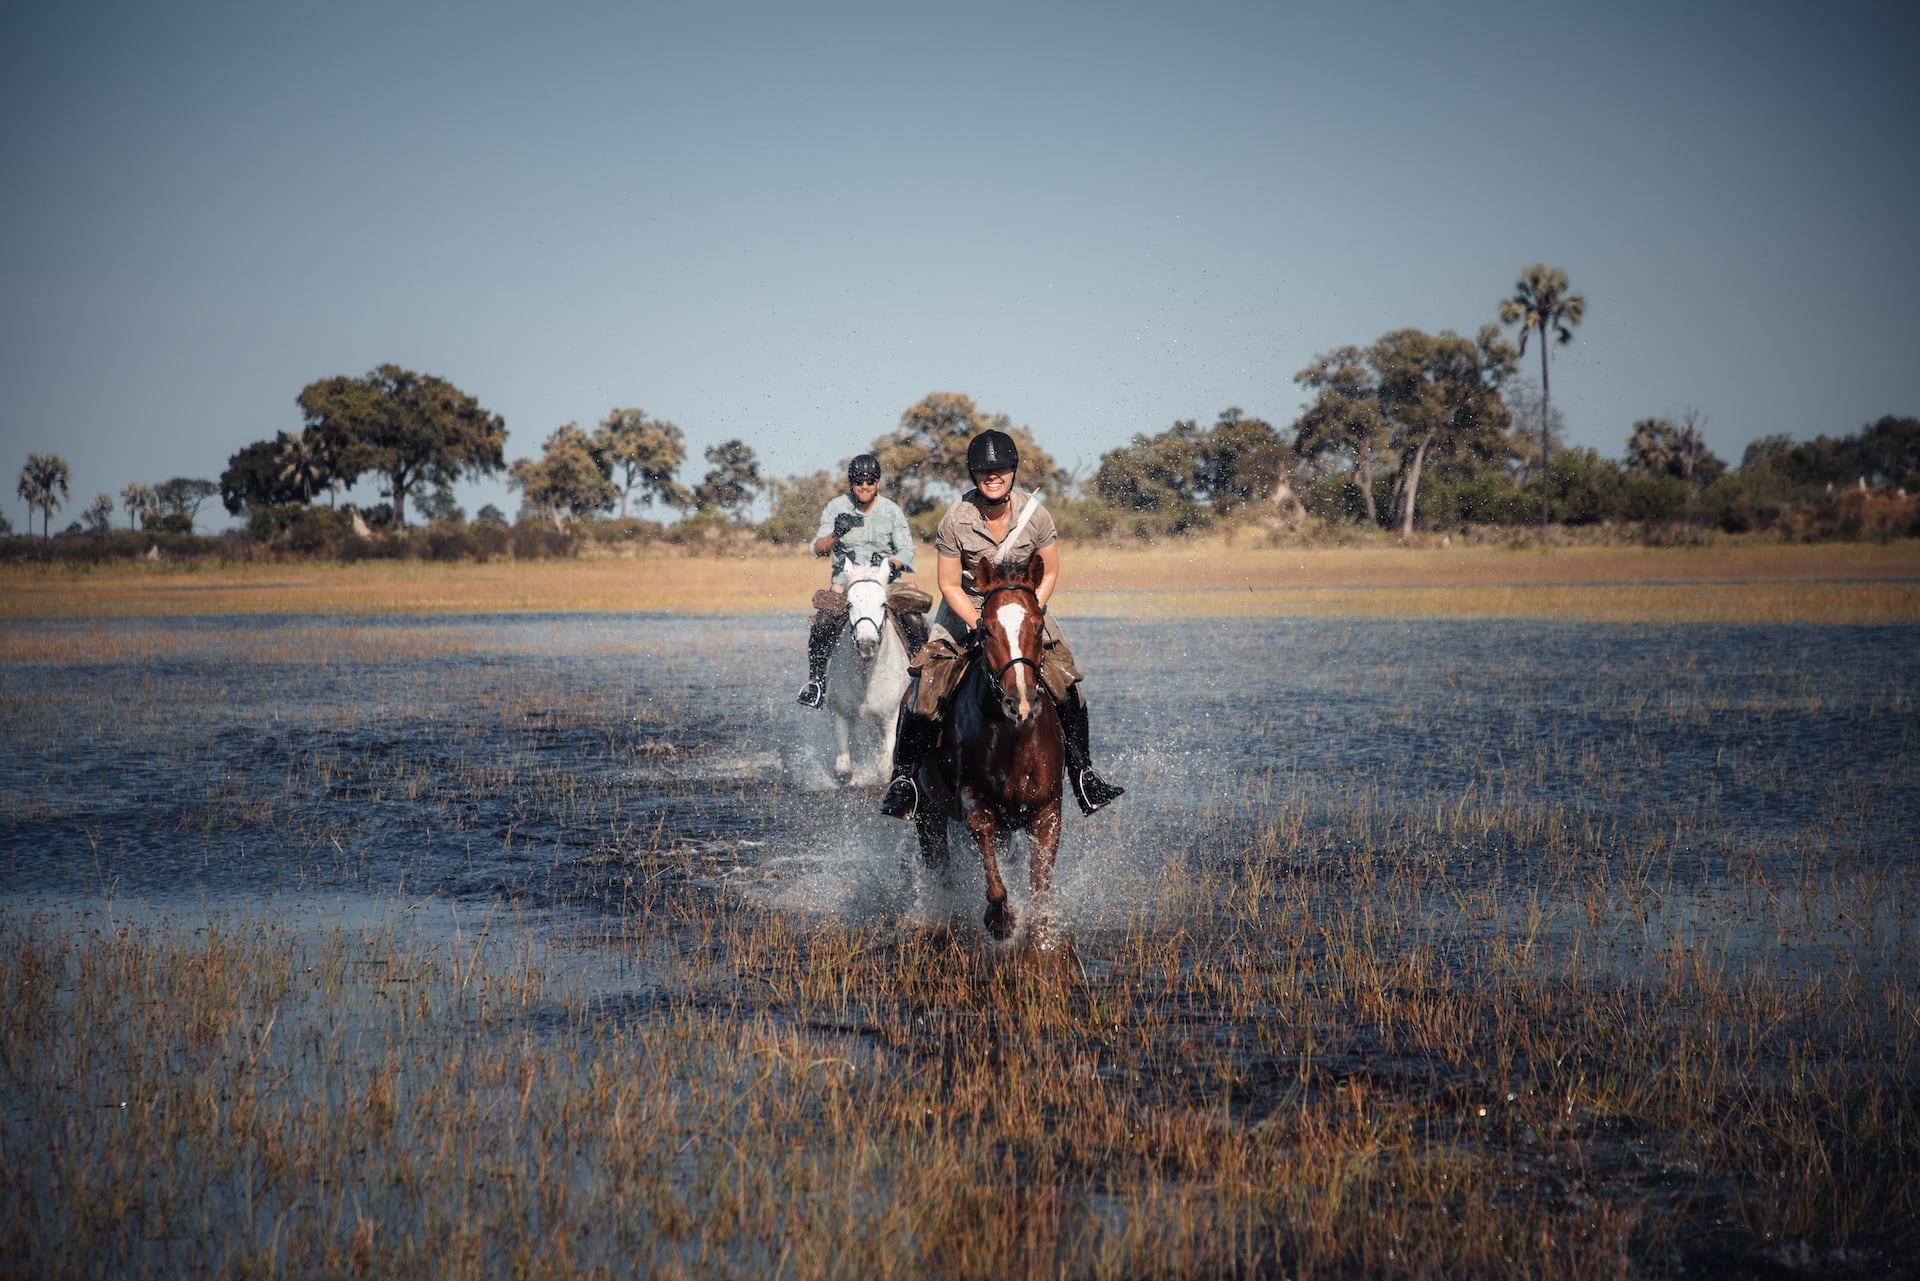 Mann und Frau galoppieren durchs Wasser im Okavango Delta